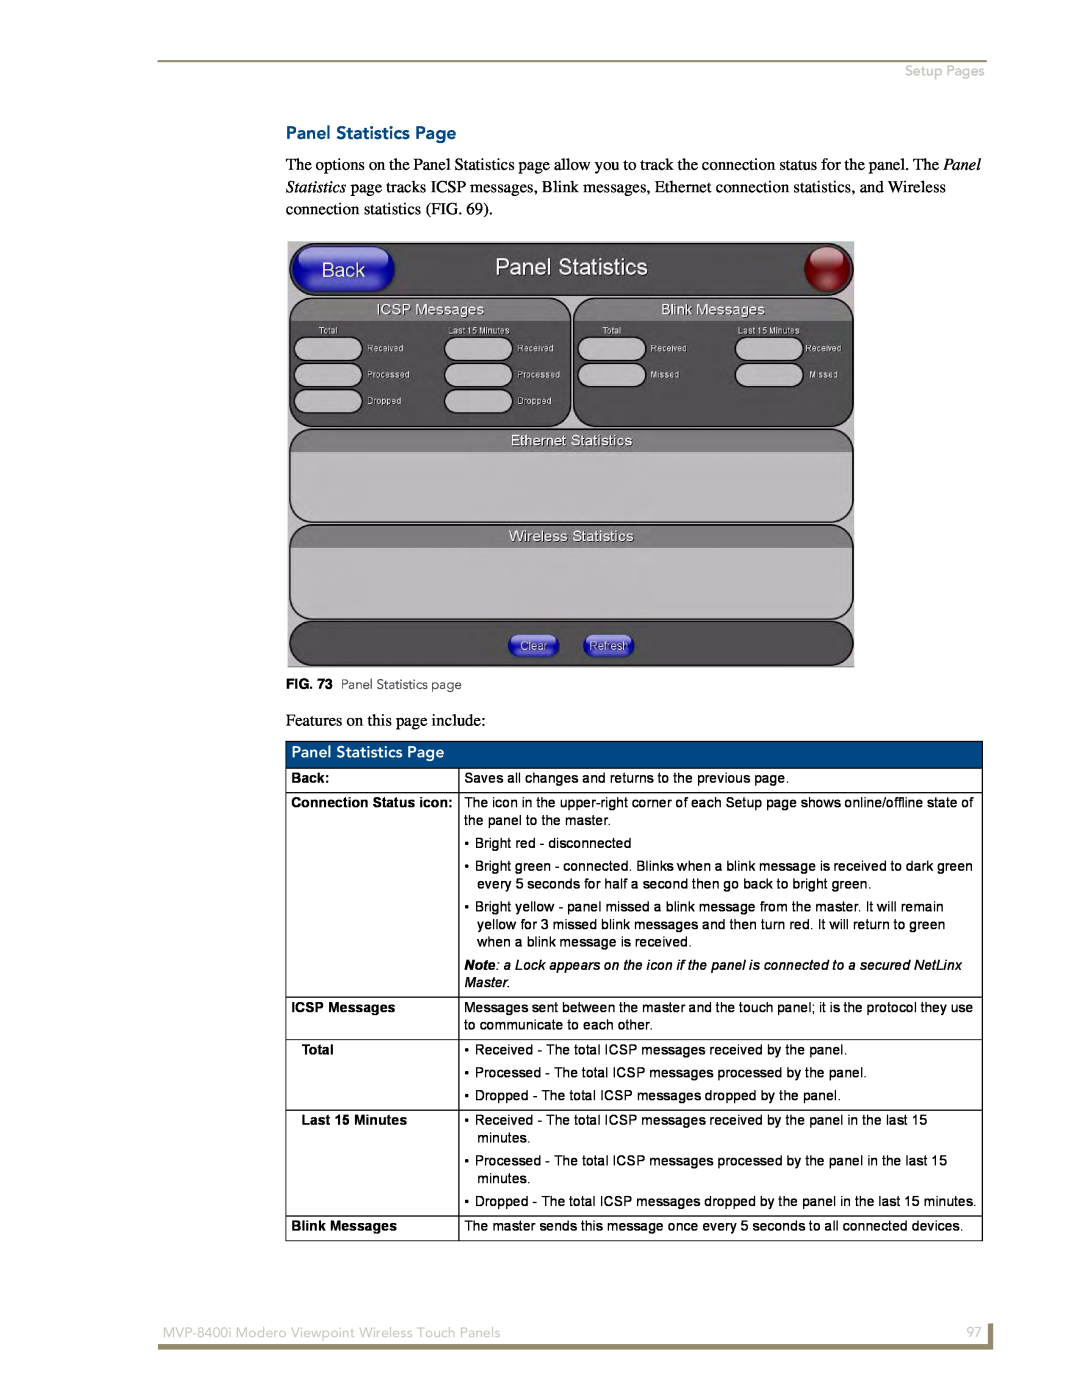 AMX MVP-8400i Panel Statistics Page, Setup Pages, Back, Master, ICSP Messages, Total, Last 15 Minutes, Blink Messages 